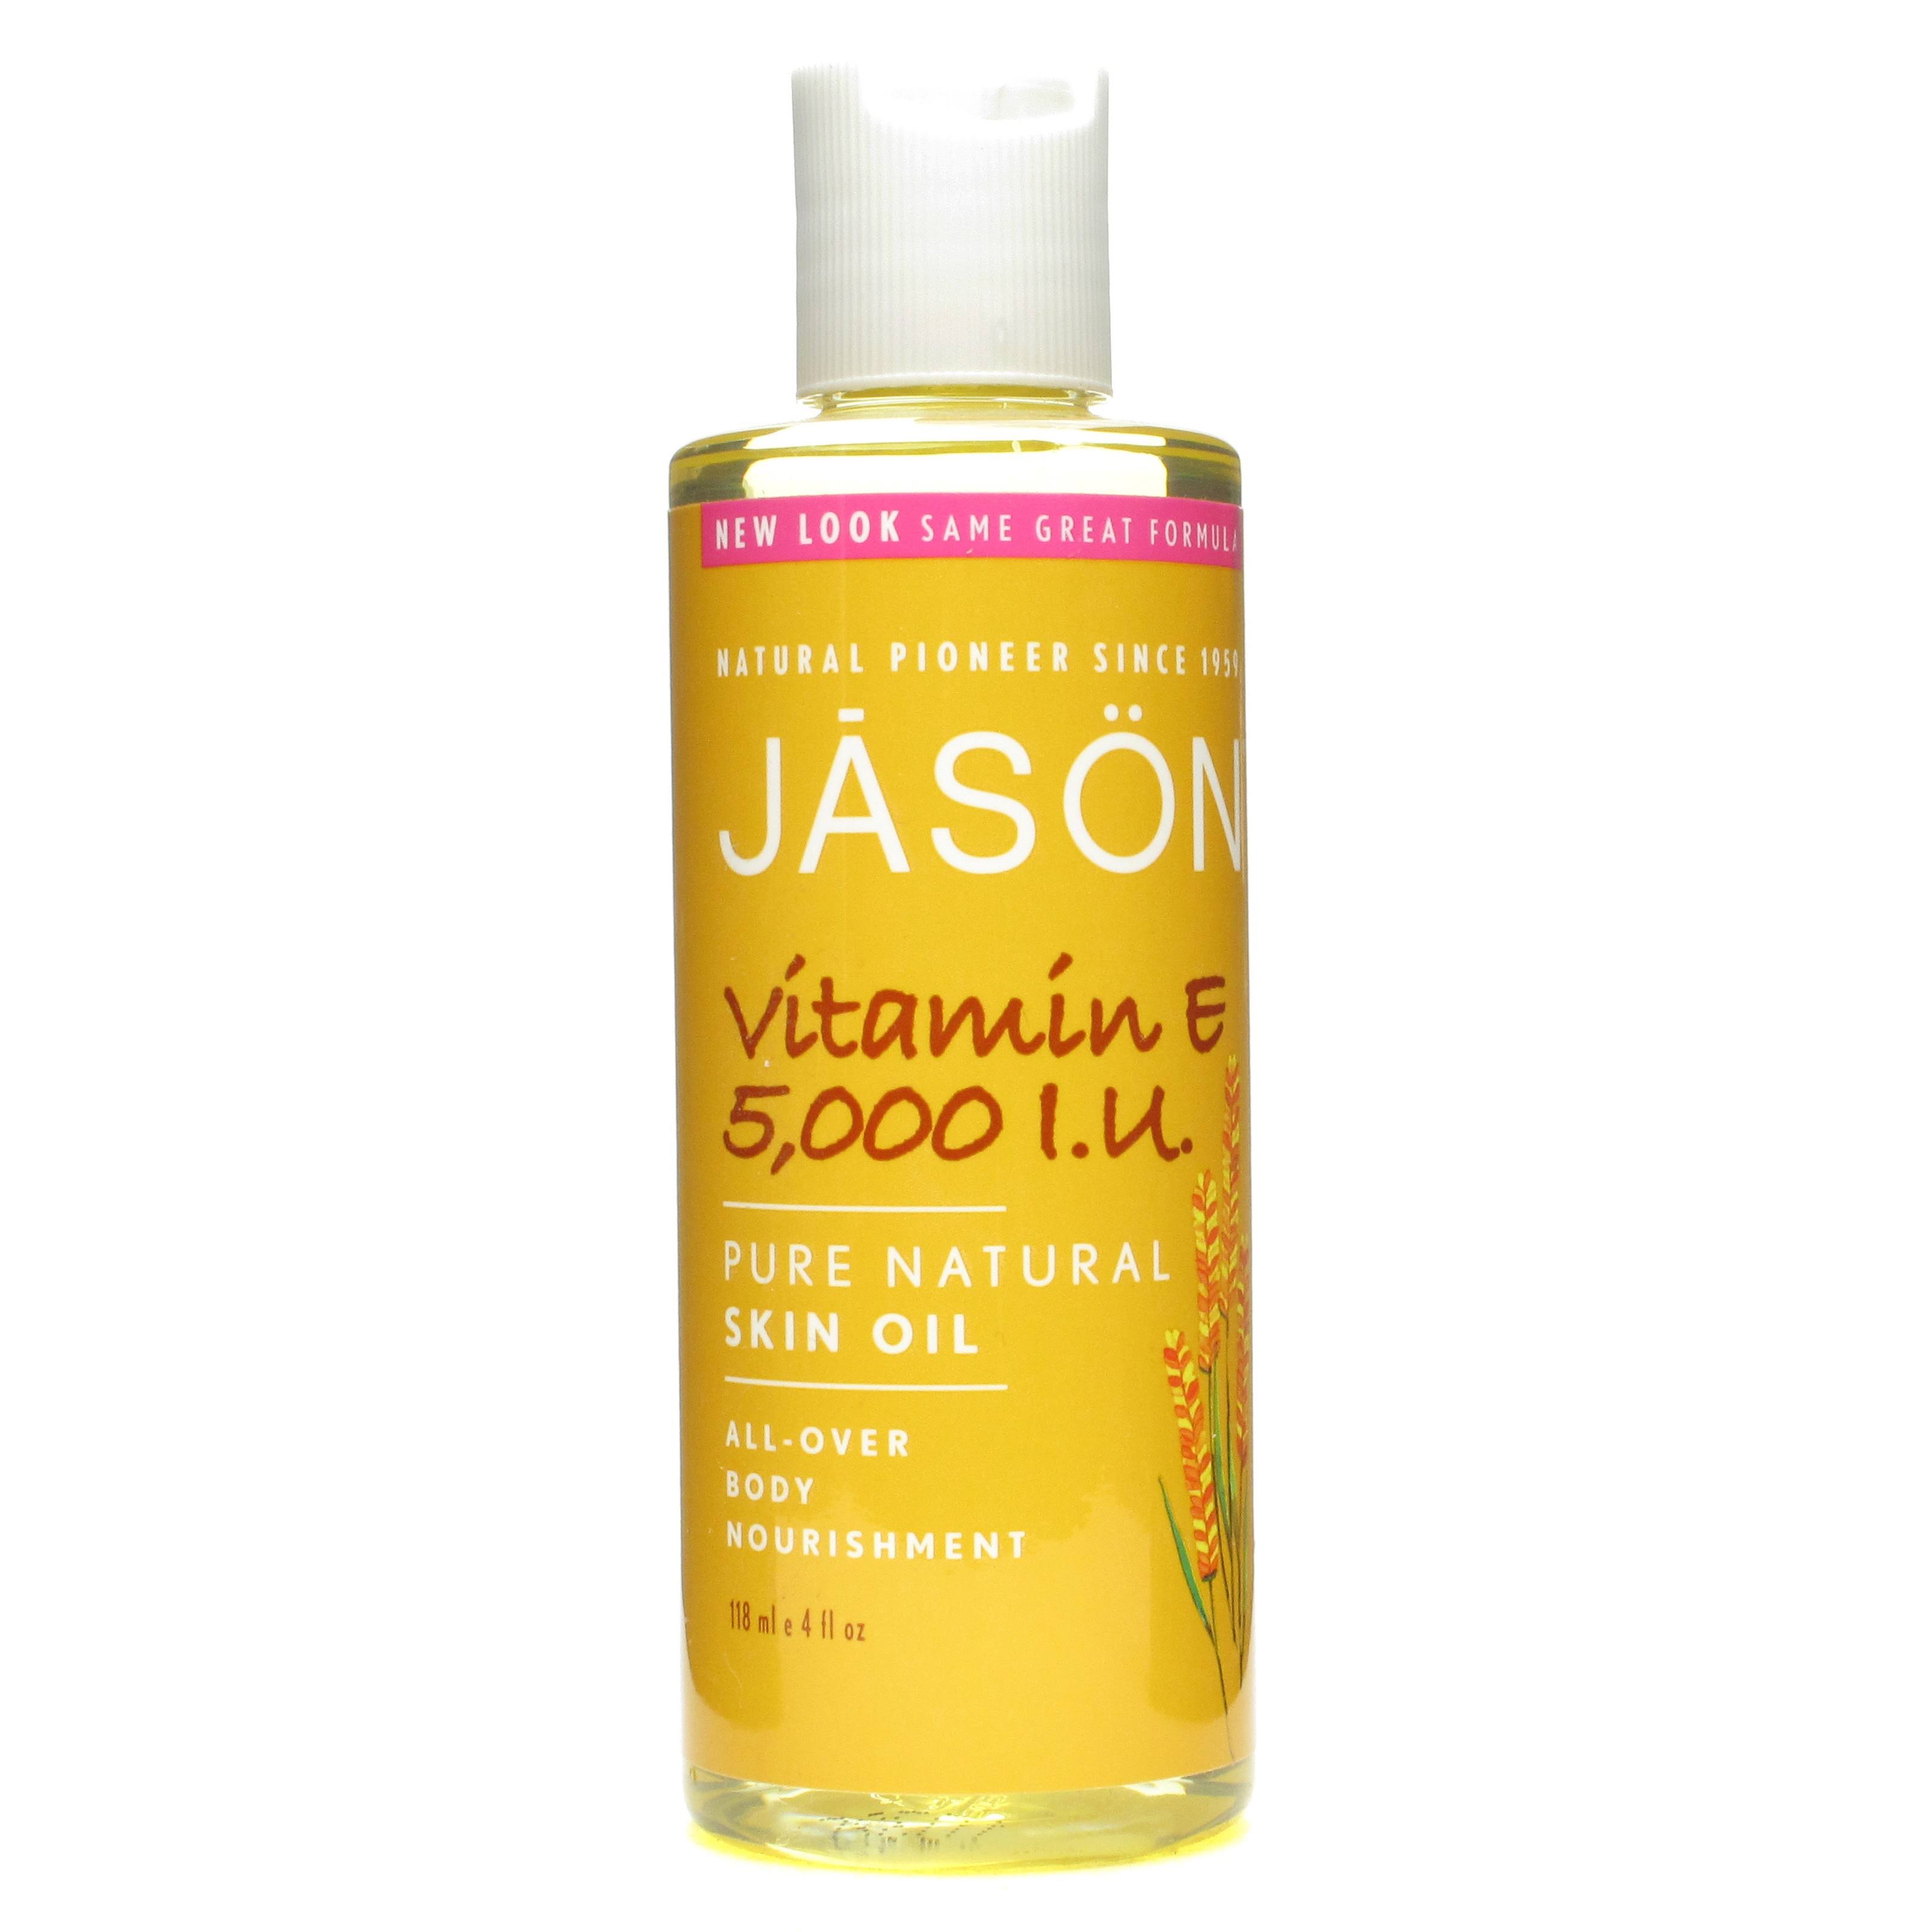 Jason Vitamin E Pure Beauty Oil - 5,000 IU